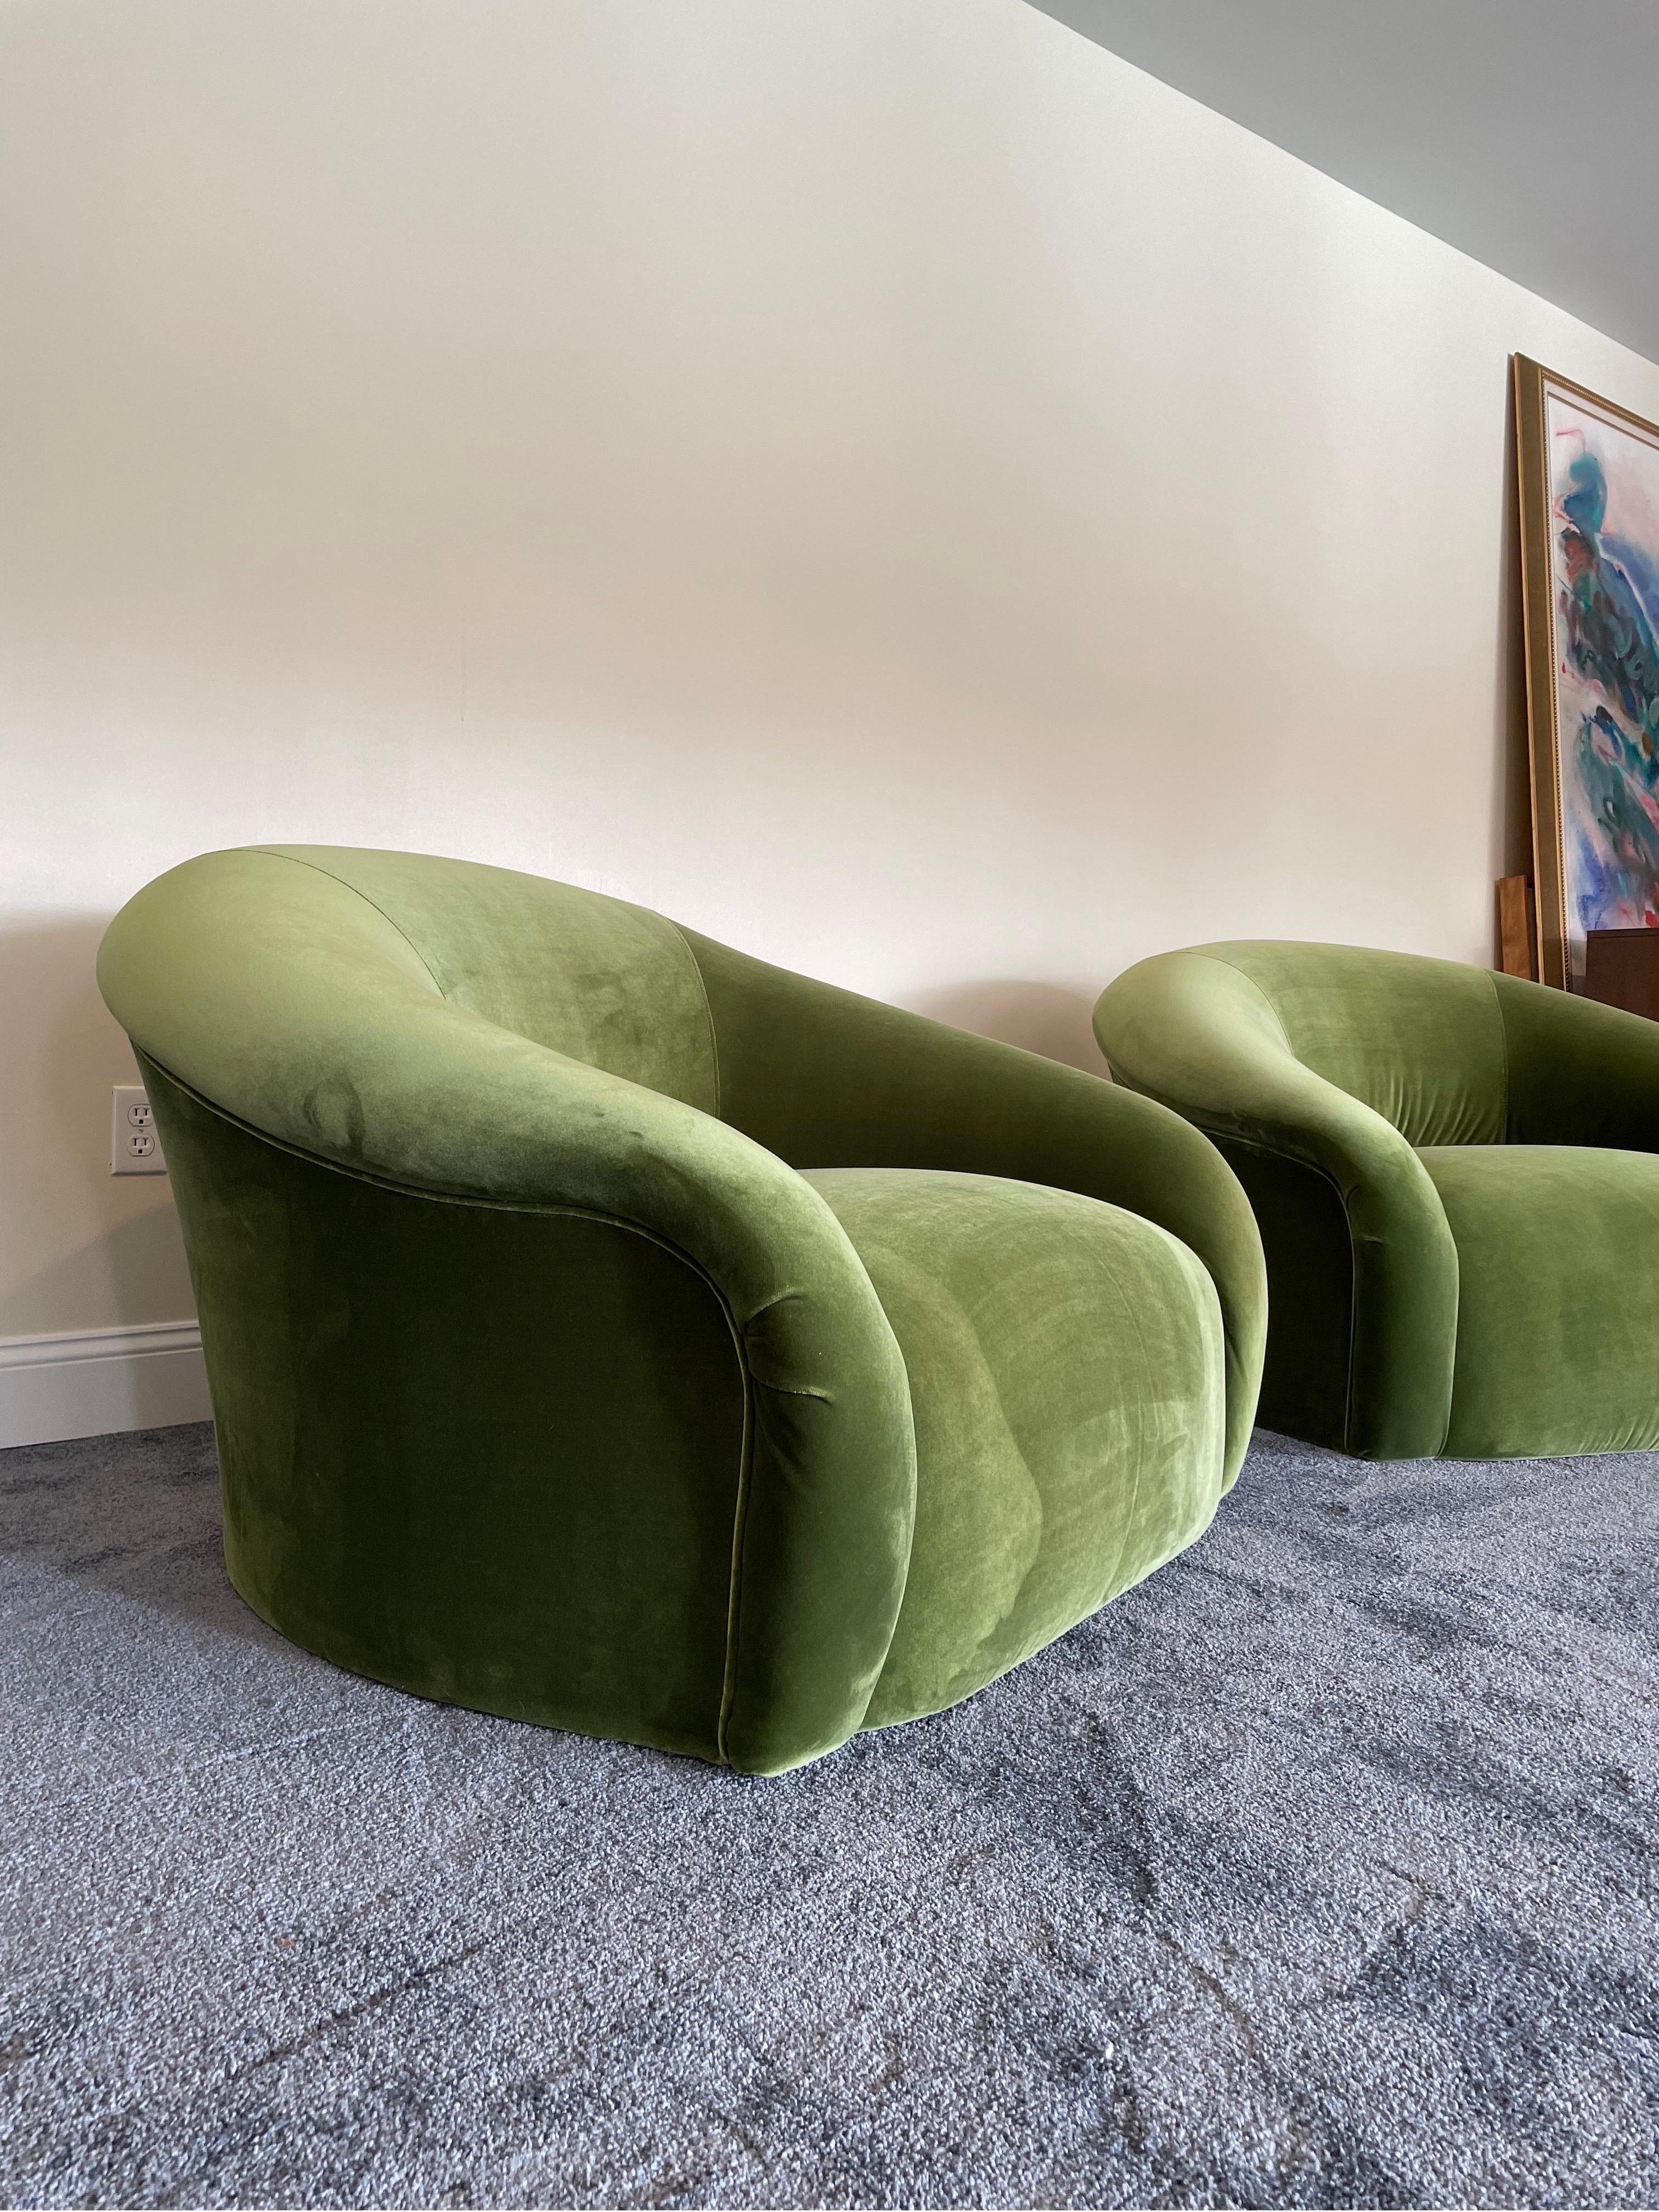 Une paire de chaises longues surdimensionnées de Sally Sirkin Lewis pour J. Robert Scott magnifiquement refaites en luxueux velours vert mousse. Je me sens un peu Royere, un peu Kagan et très à l'aise. Les chaises sont montées sur des roulettes